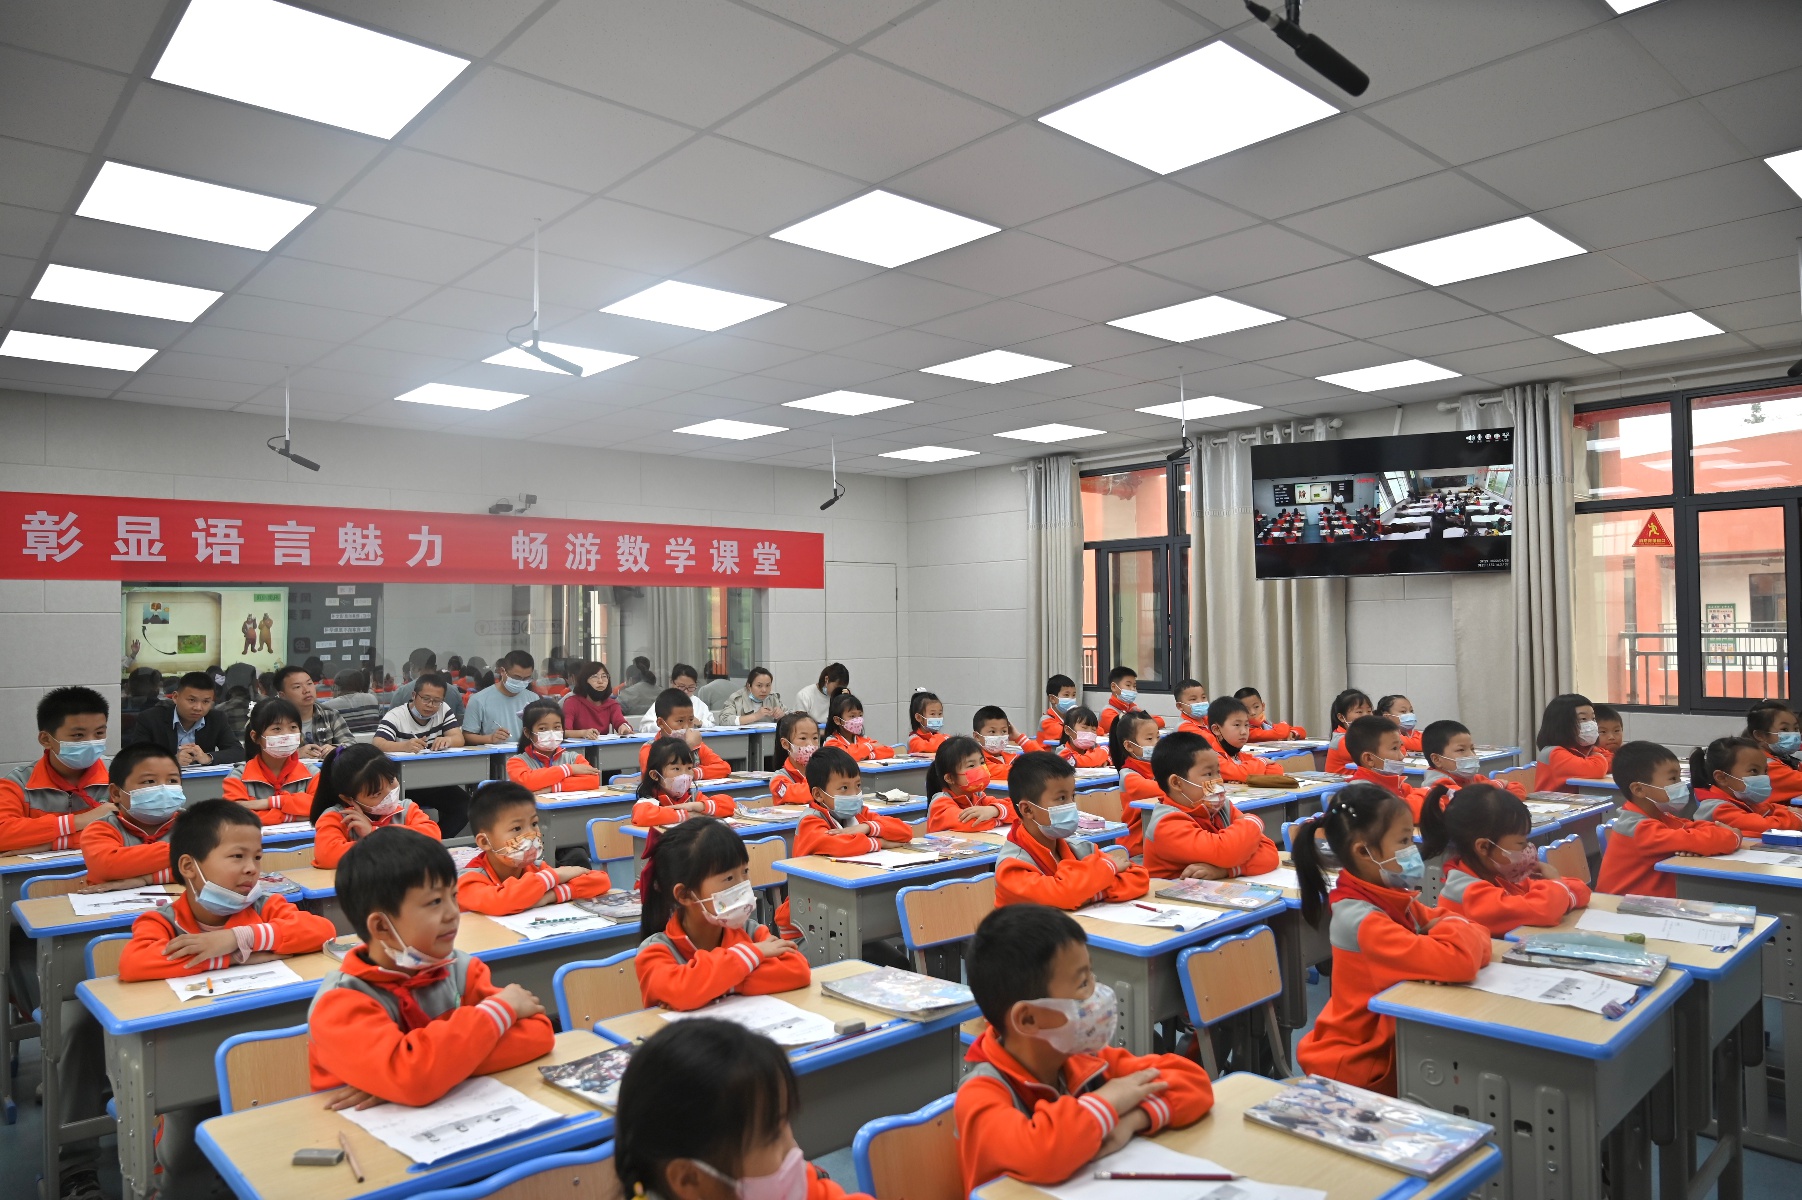 思想大解放 竞技展风采:凤凰县芙蓉学校举行数学教学竞赛活动